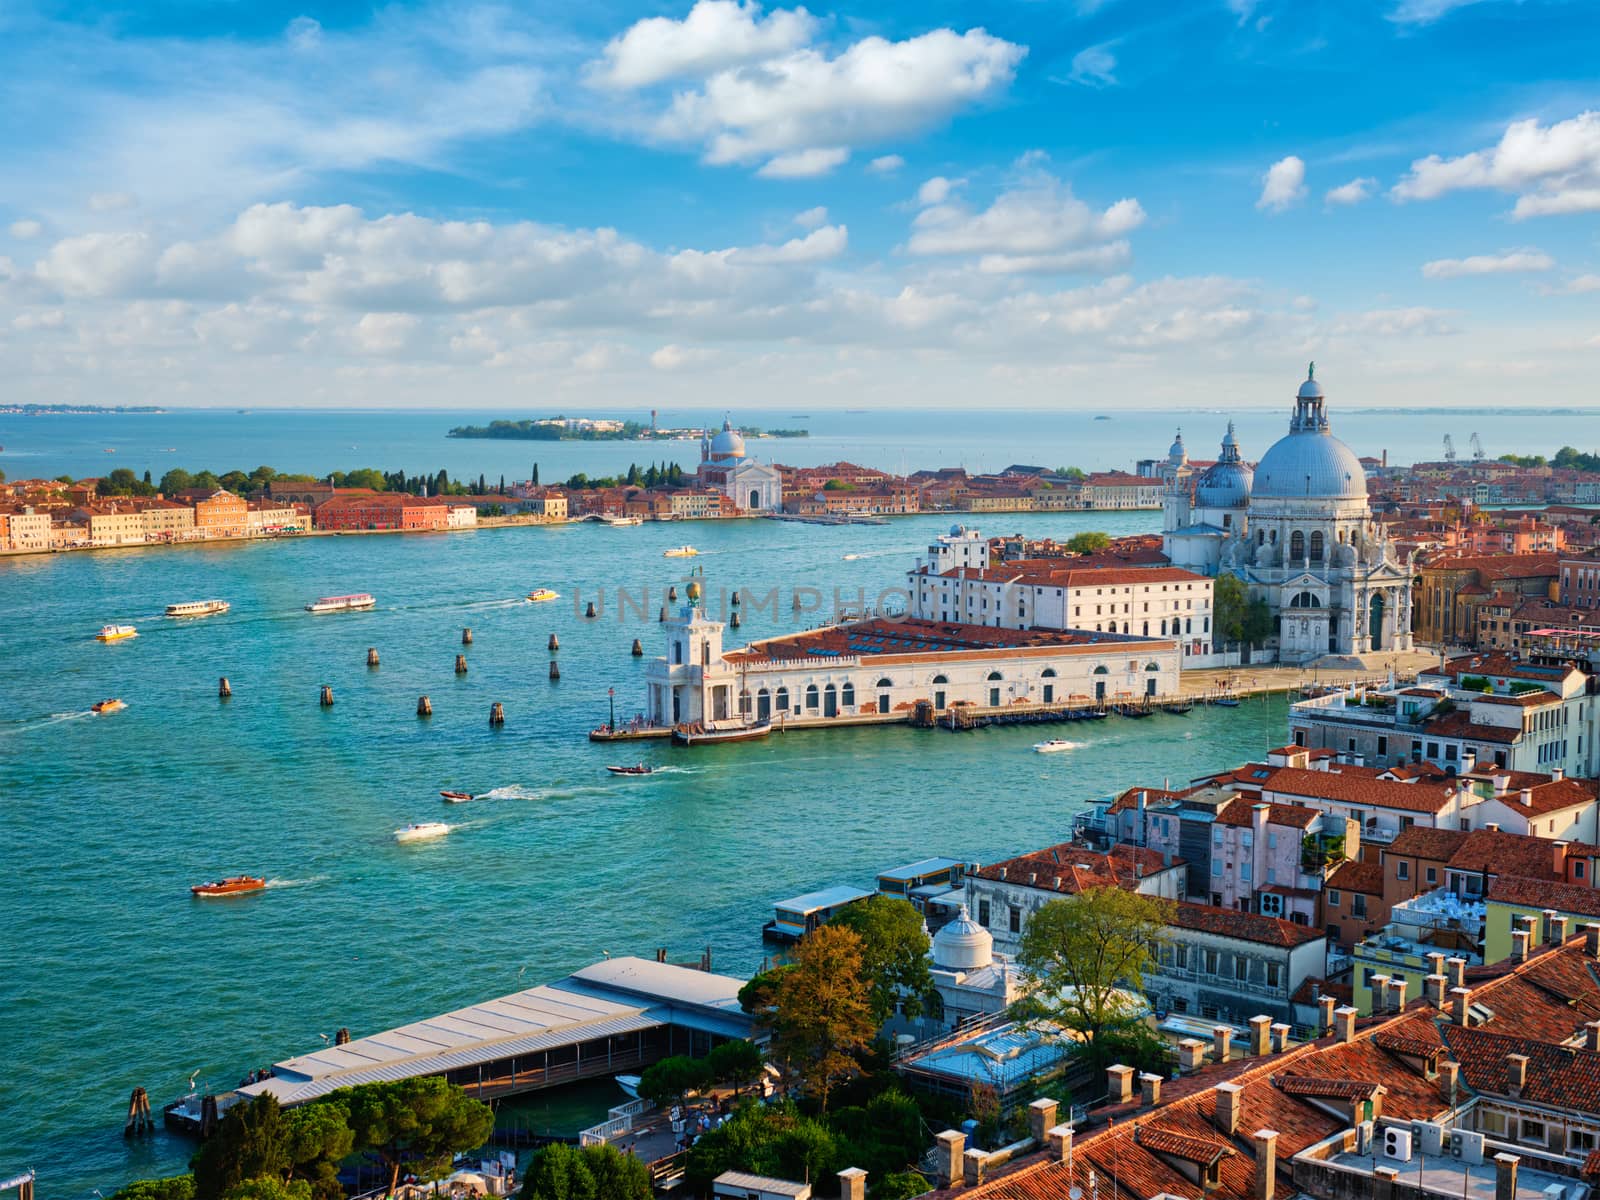 View of Venice lagoon and Santa Maria della Salute. Venice, Italy by dimol